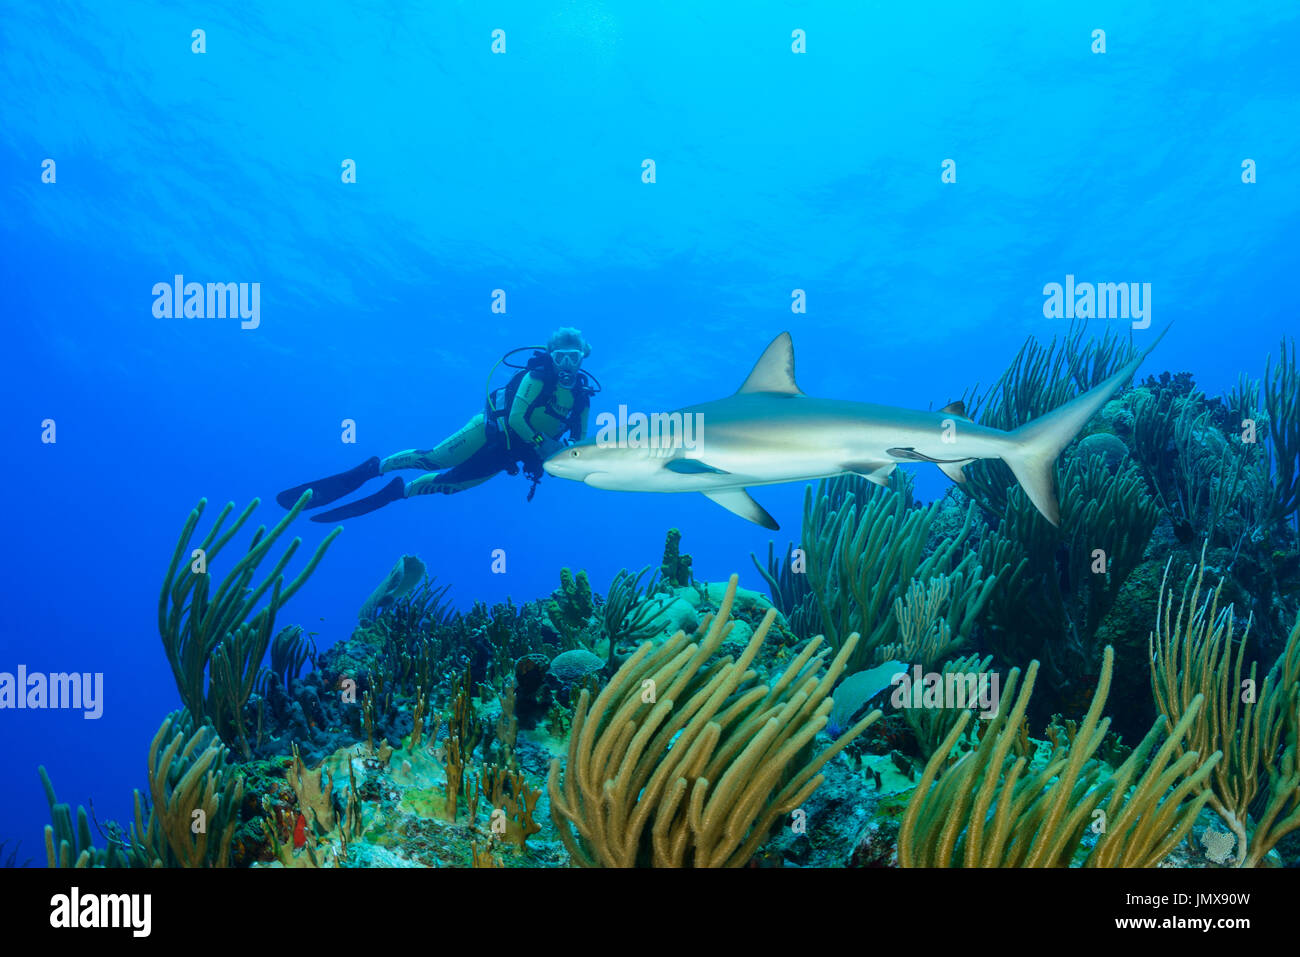 Carcharhinus perezii, Caribbean reef shark nella barriera corallina e scuba diver, Cooper Island, Isole Vergini Britanniche, Mar dei Caraibi Foto Stock